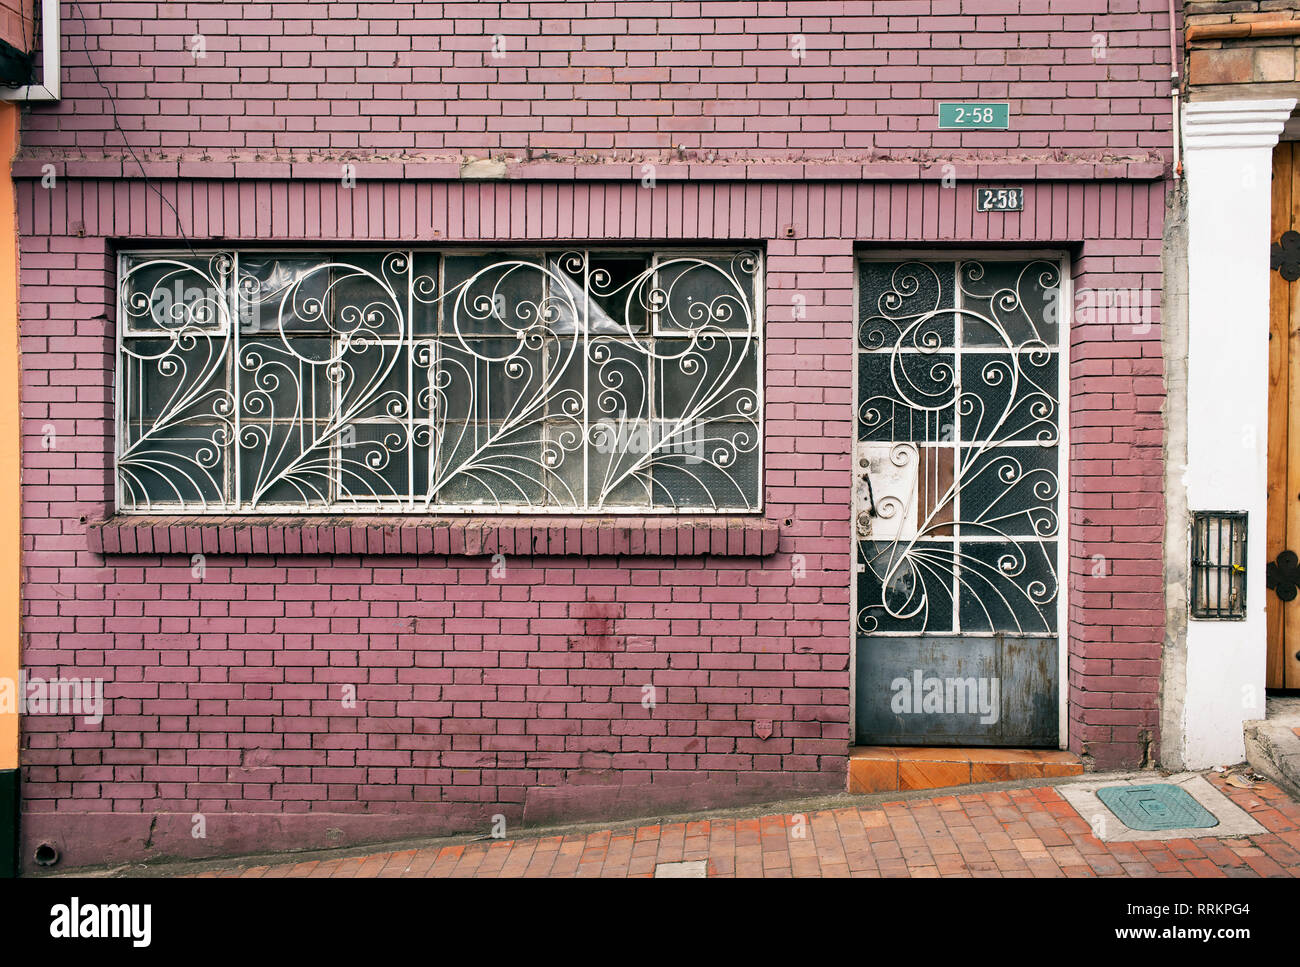 Colorida fachada de edificio residencial con un estilo retro de barras de metal para puertas y ventanas. La Candelaria, Bogotá, Colombia. Sep 2018 Foto de stock